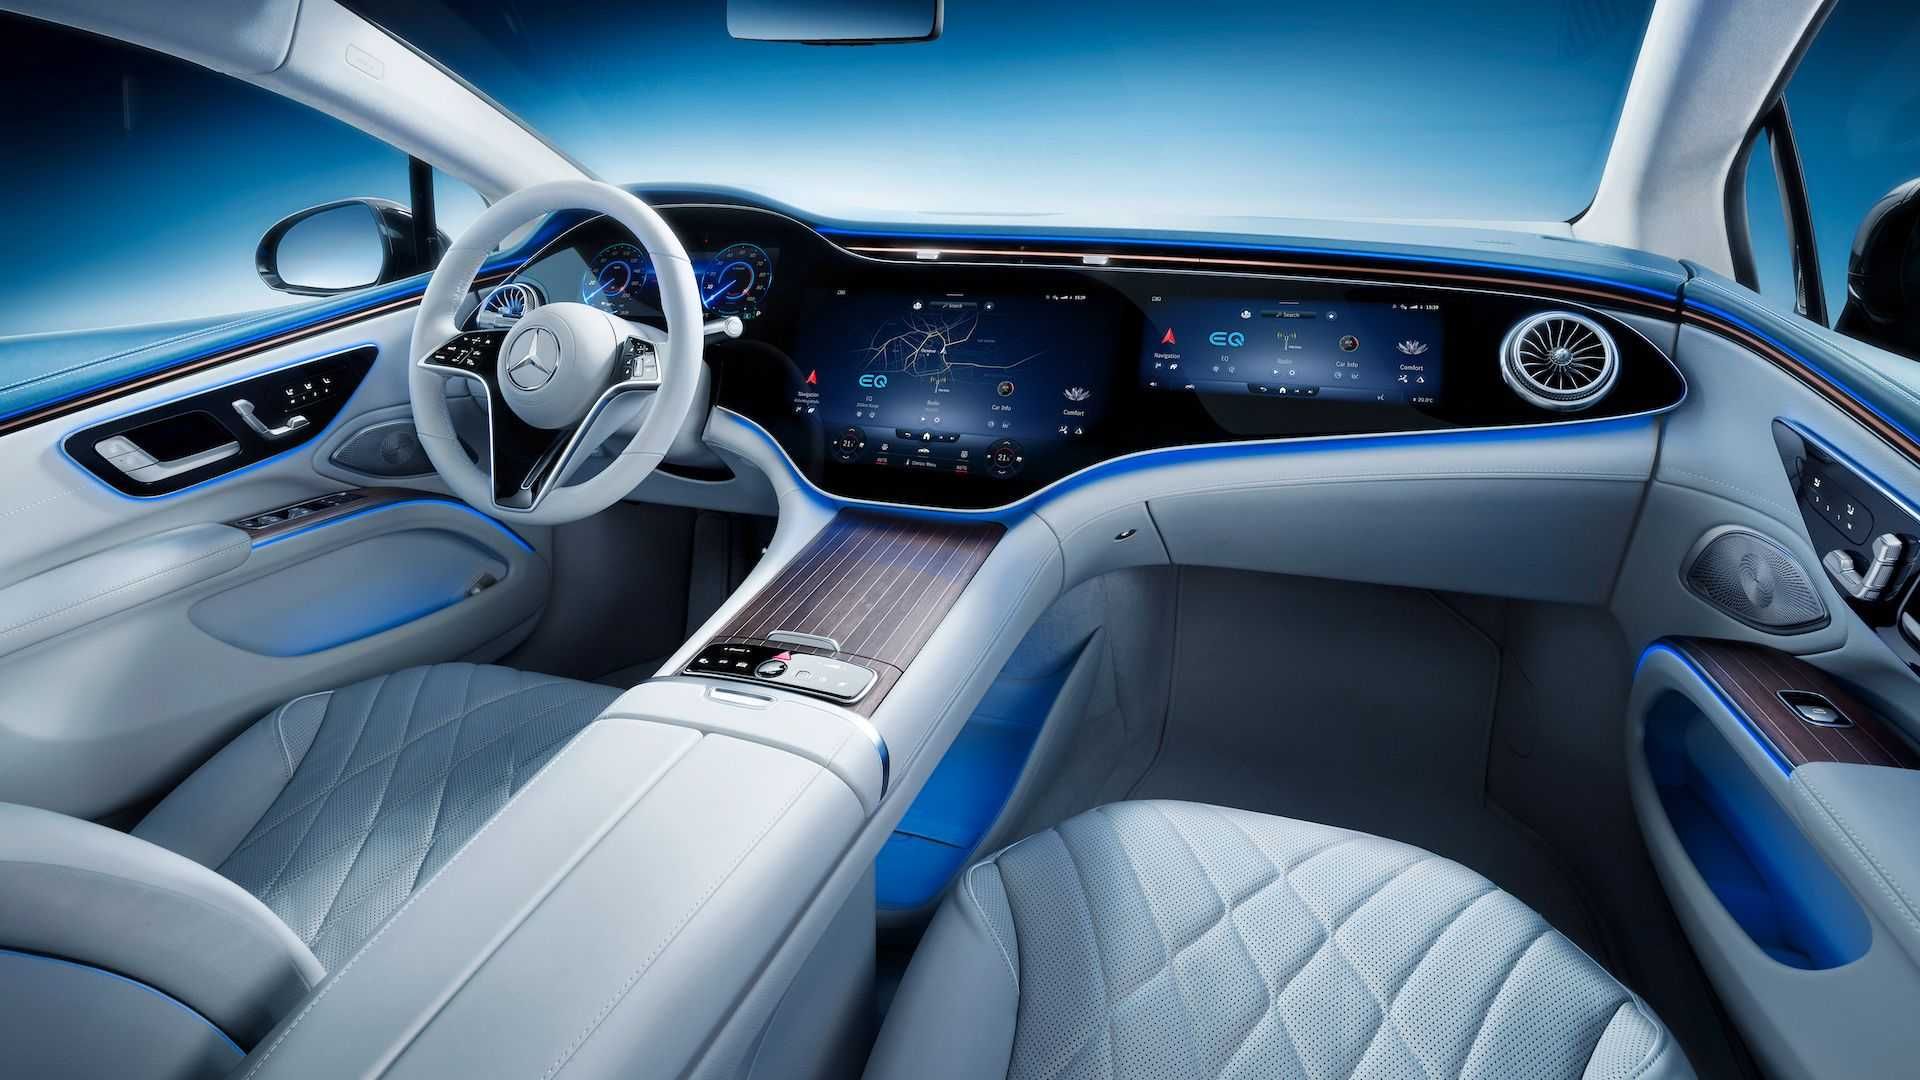 مرجع متخصصين ايران Mercedes-Benz EQS Interior نماي داخلي مرسدس بنز اي كيو اس